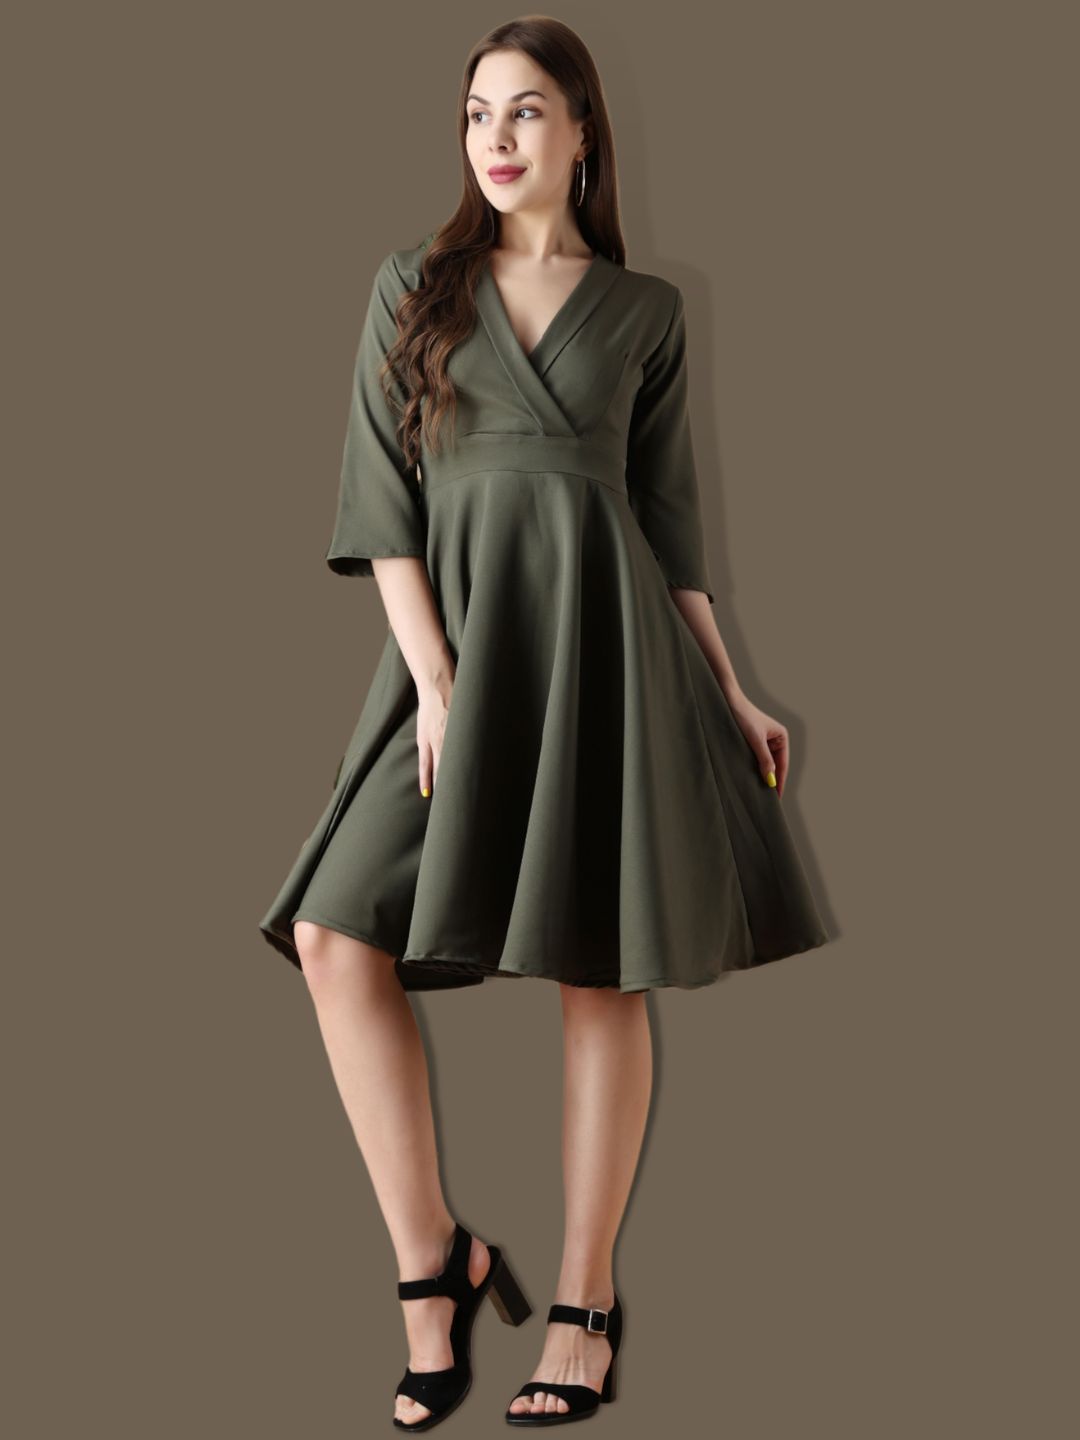 Olive Cordium Flairy Dress